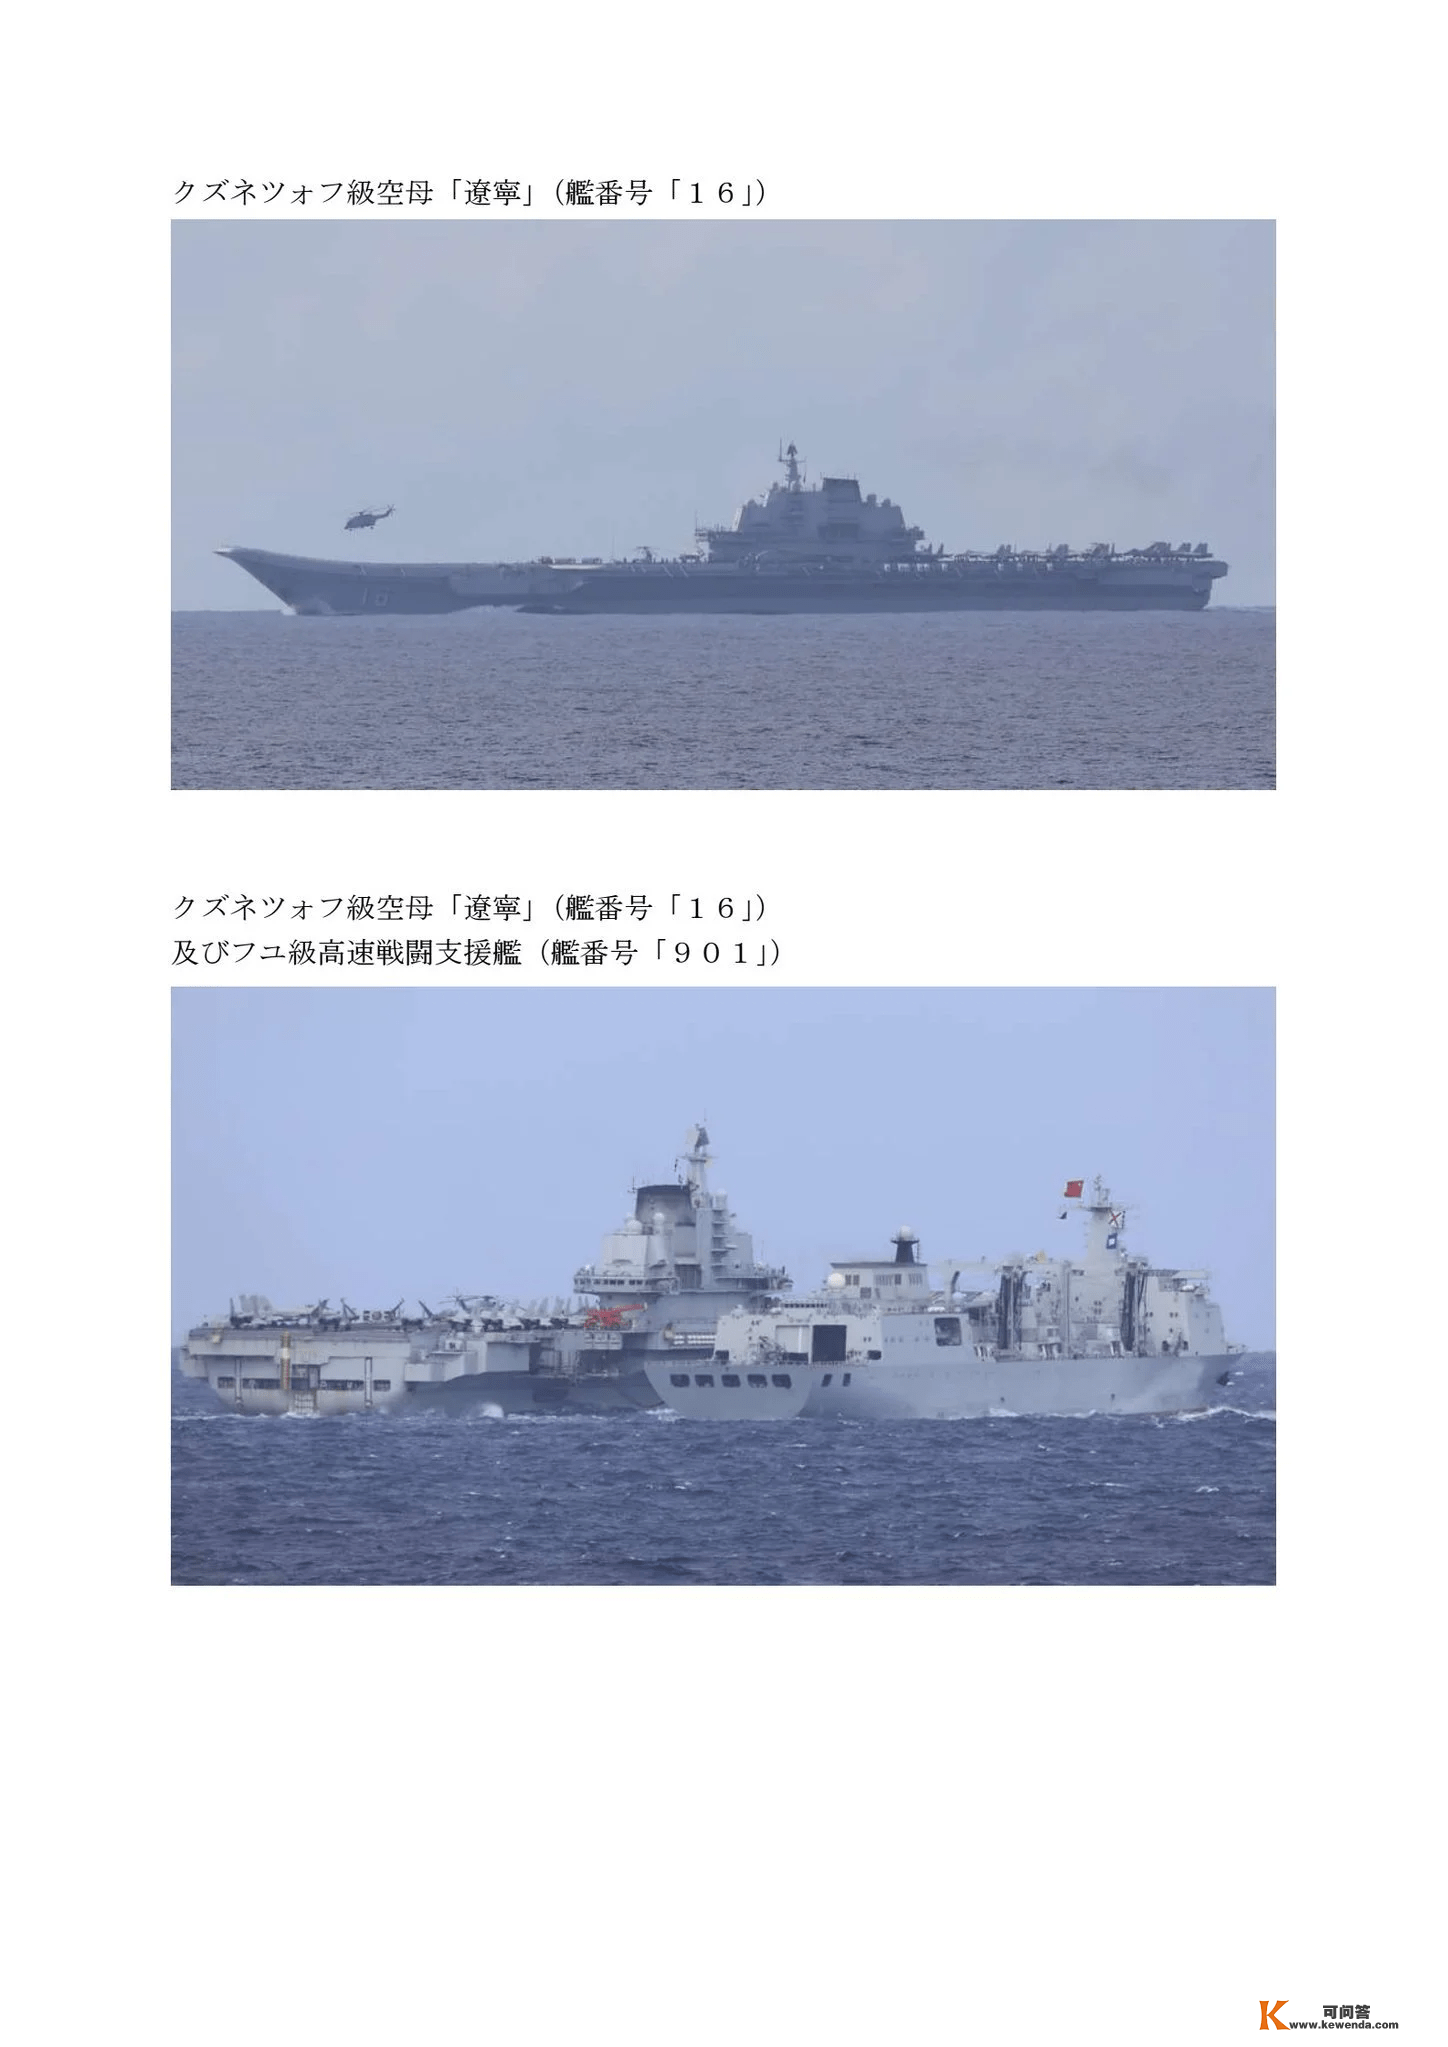 台海美日联军可能性，越来越大，中国航母到关岛，就是为此筹办